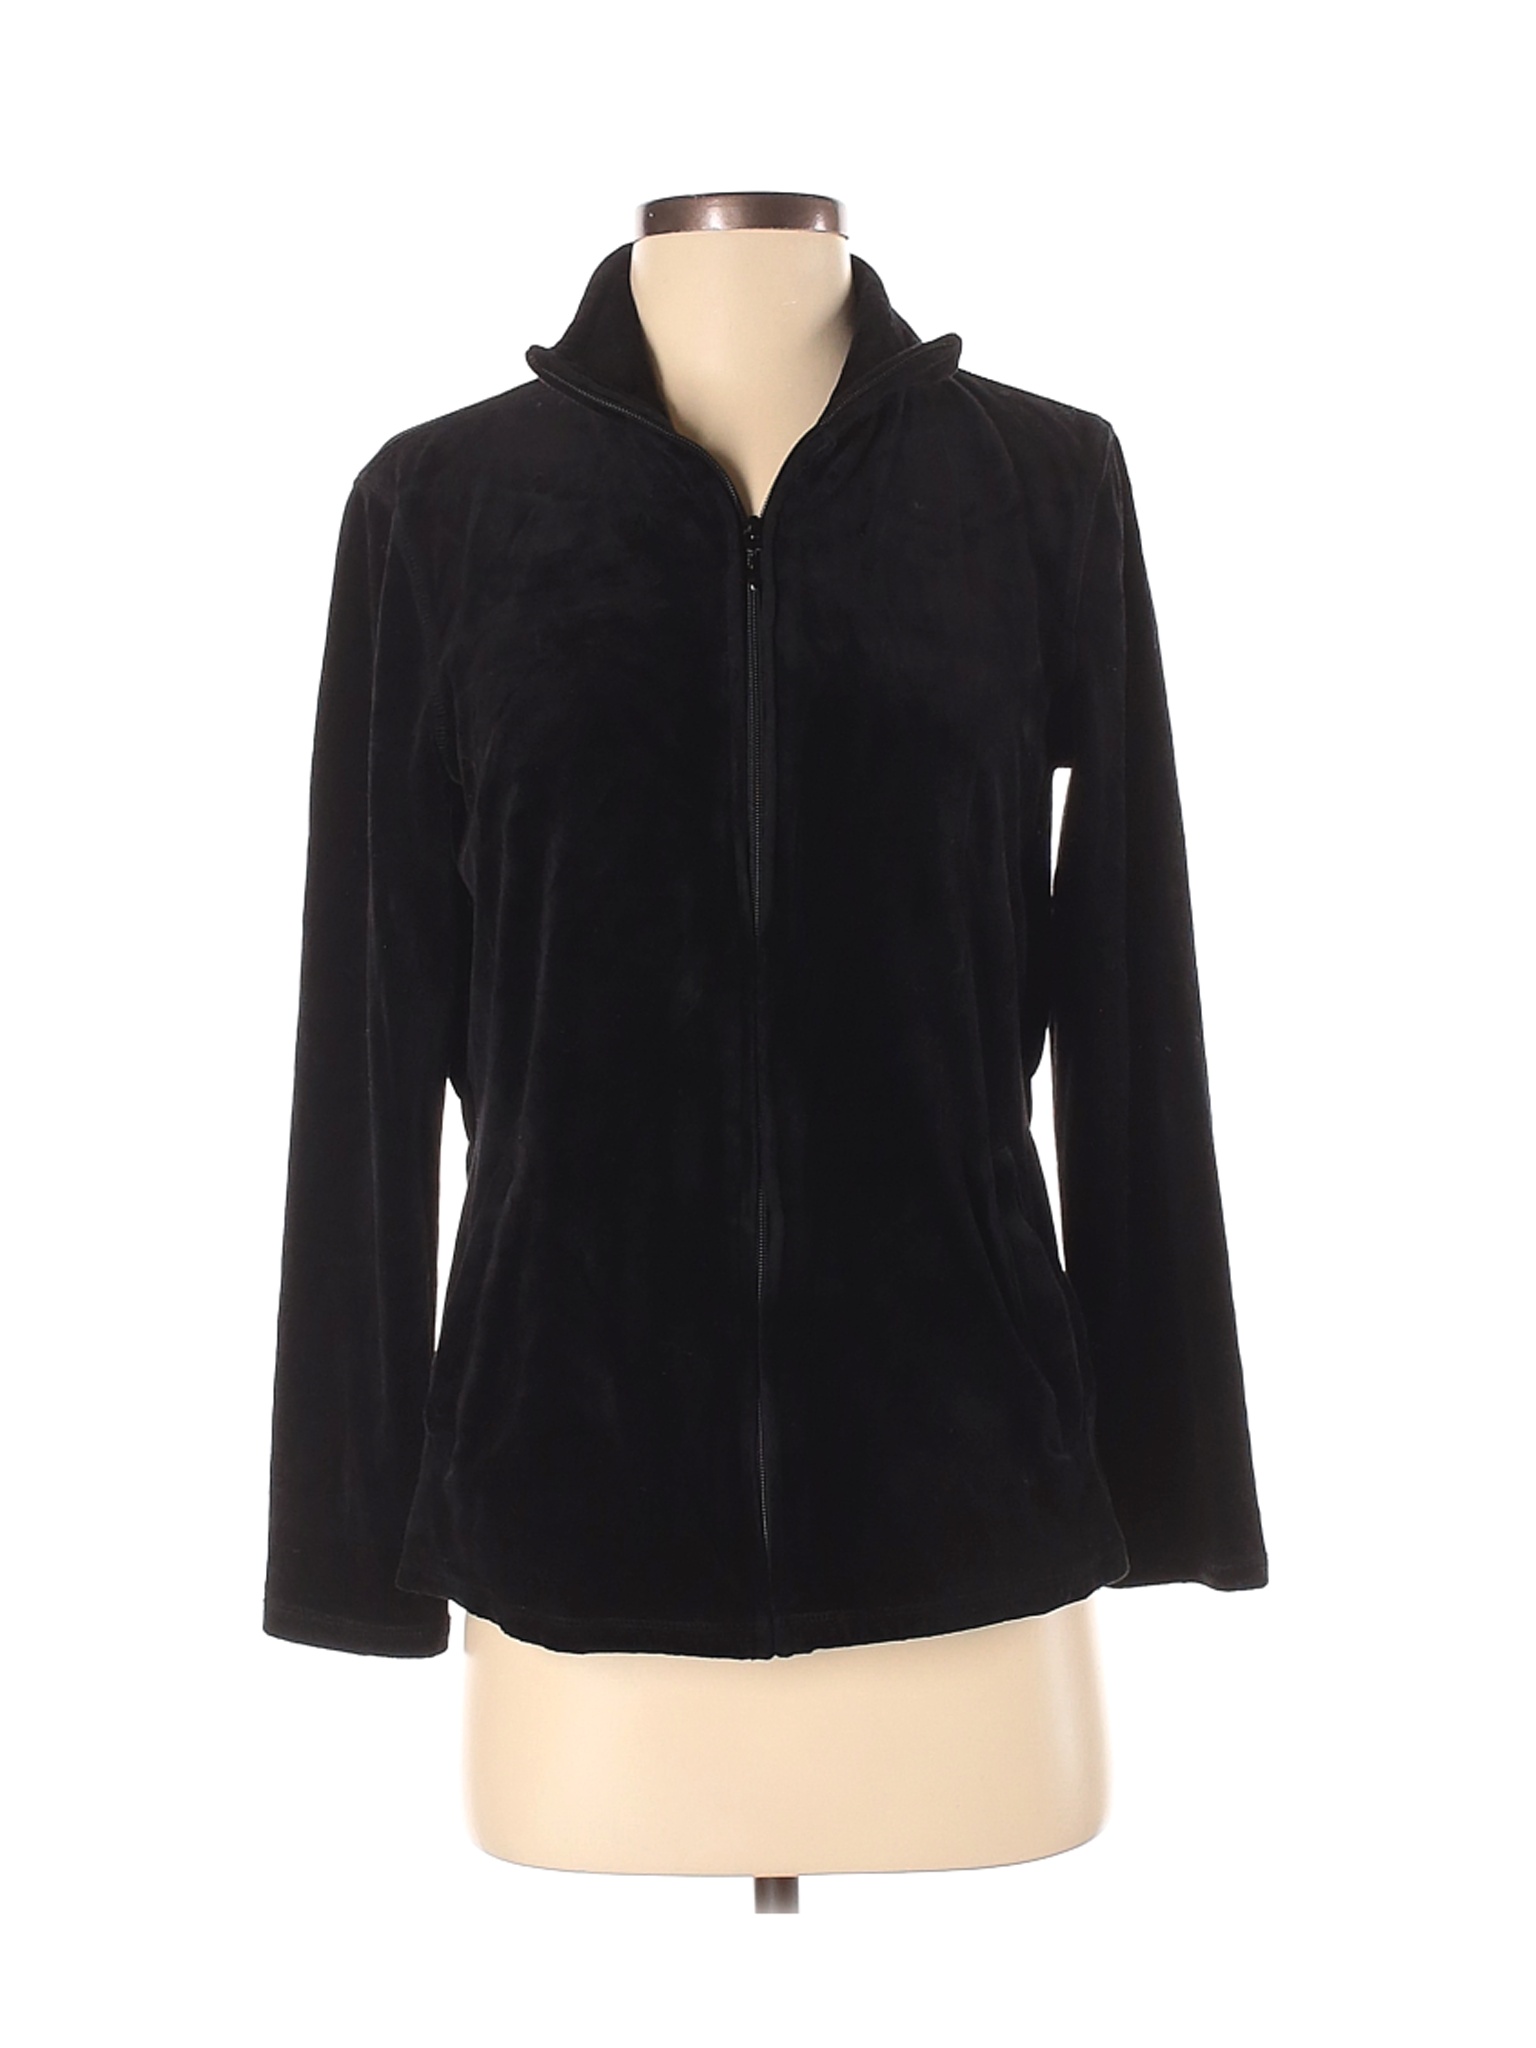 Talbots Women Black Jacket S | eBay